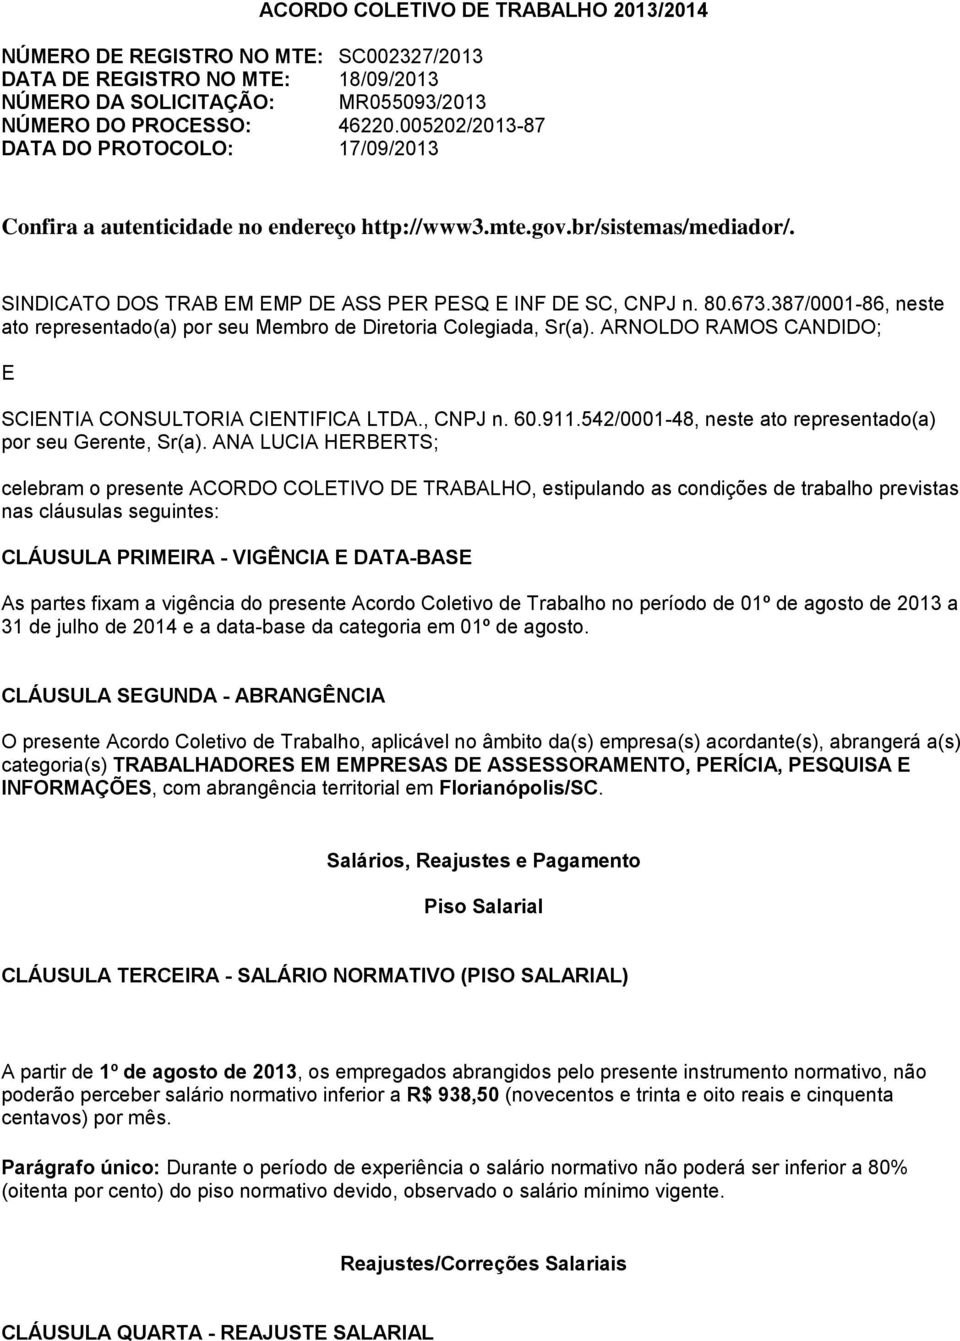 387/0001-86, neste ato representado(a) por seu Membro de Diretoria Colegiada, Sr(a). ARNOLDO RAMOS CANDIDO; E SCIENTIA CONSULTORIA CIENTIFICA LTDA., CNPJ n. 60.911.